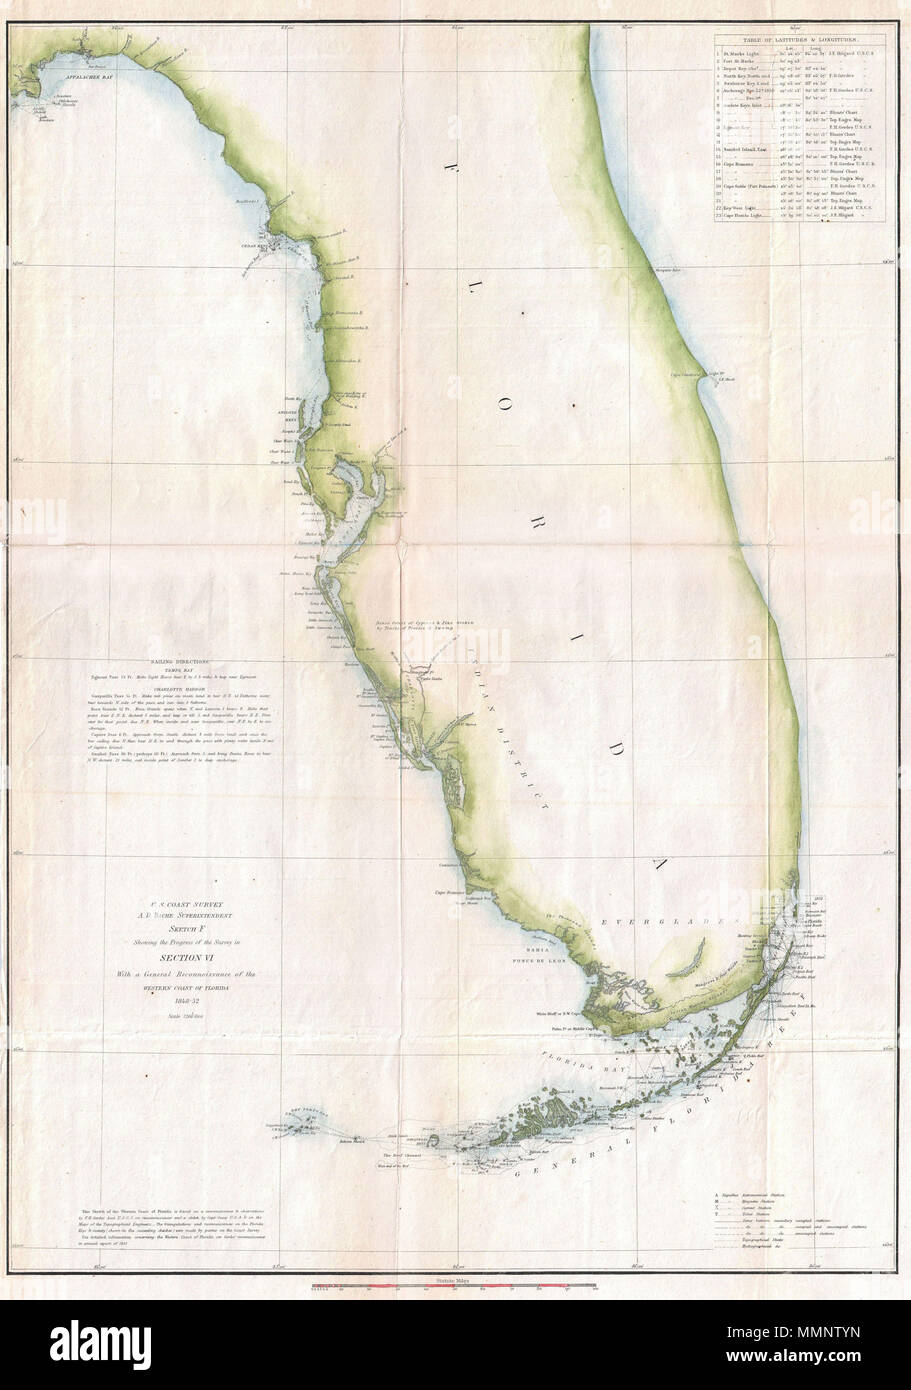 . Englisch: eine seltene rippenbögen Diagramm von Florida von der US-Küstenwache, 1852. Zeigt die gesamte der Florida Halbinsel, sondern gezielt Details der westlichen Küste, mit allen Buchten und Häfen, sowie eine genaue Kartierung der Florida Keys. Zeigt Wenige interne Funktionen, jedoch funktioniert die Mangrovensümpfe und indischen Jagdrevier in der Nähe der Everglades. Mit Ausnahme der Key Biscayne Bay (Miami), die Ostküste von Florida ist weitgehend ohne Details. Eine Tabelle im oberen rechten Quadranten mit Längen- und Breitengraden für wichtige Florida Reiseziele. Segeln instr Stockfoto